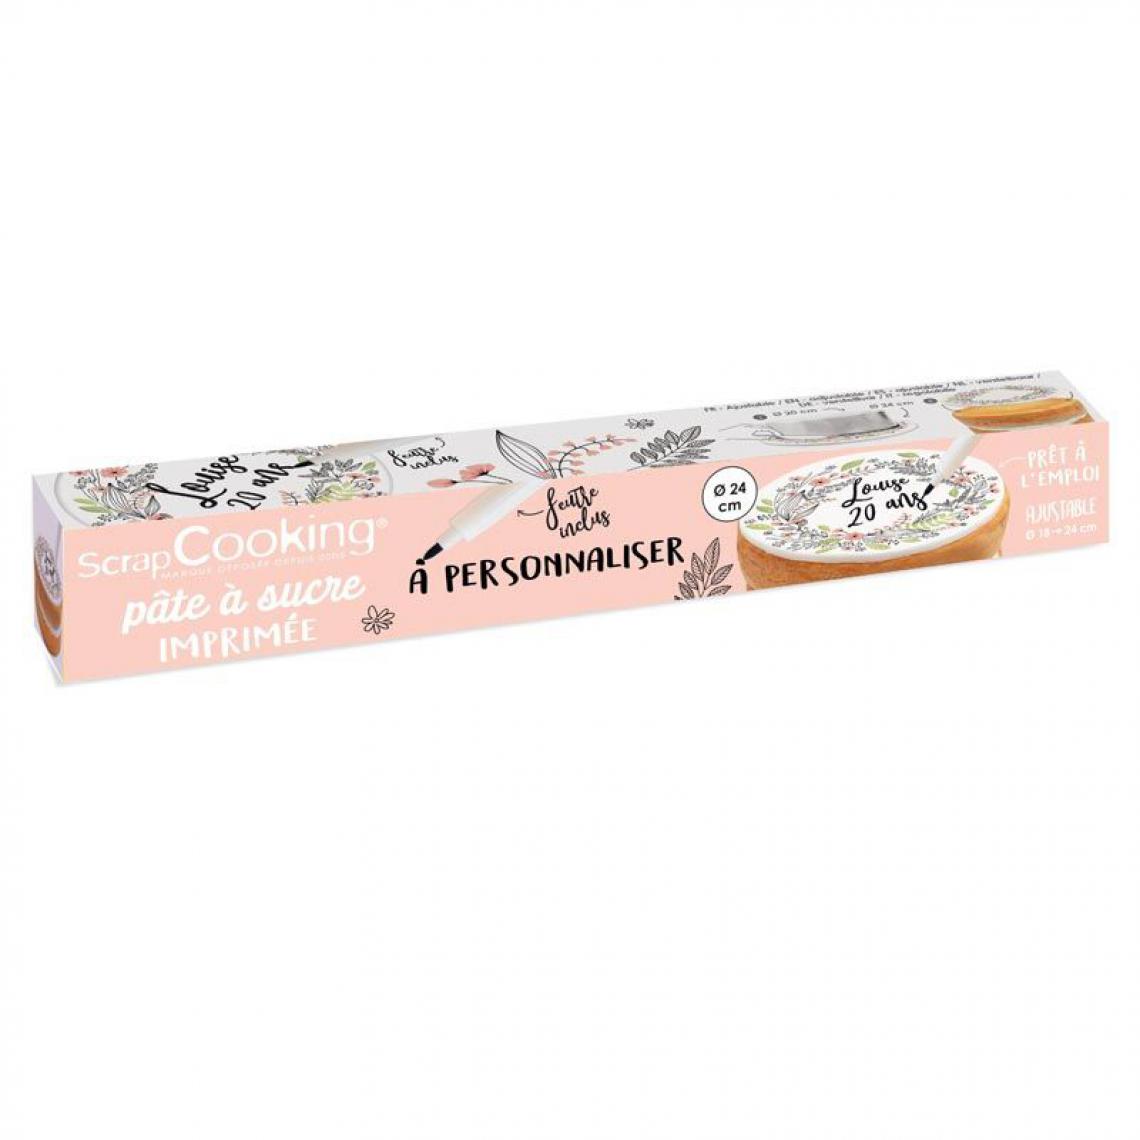 Scrapcooking - Rouleau de pâte à sucre fleurs à personnaliser Ø 24 cm - Kits créatifs